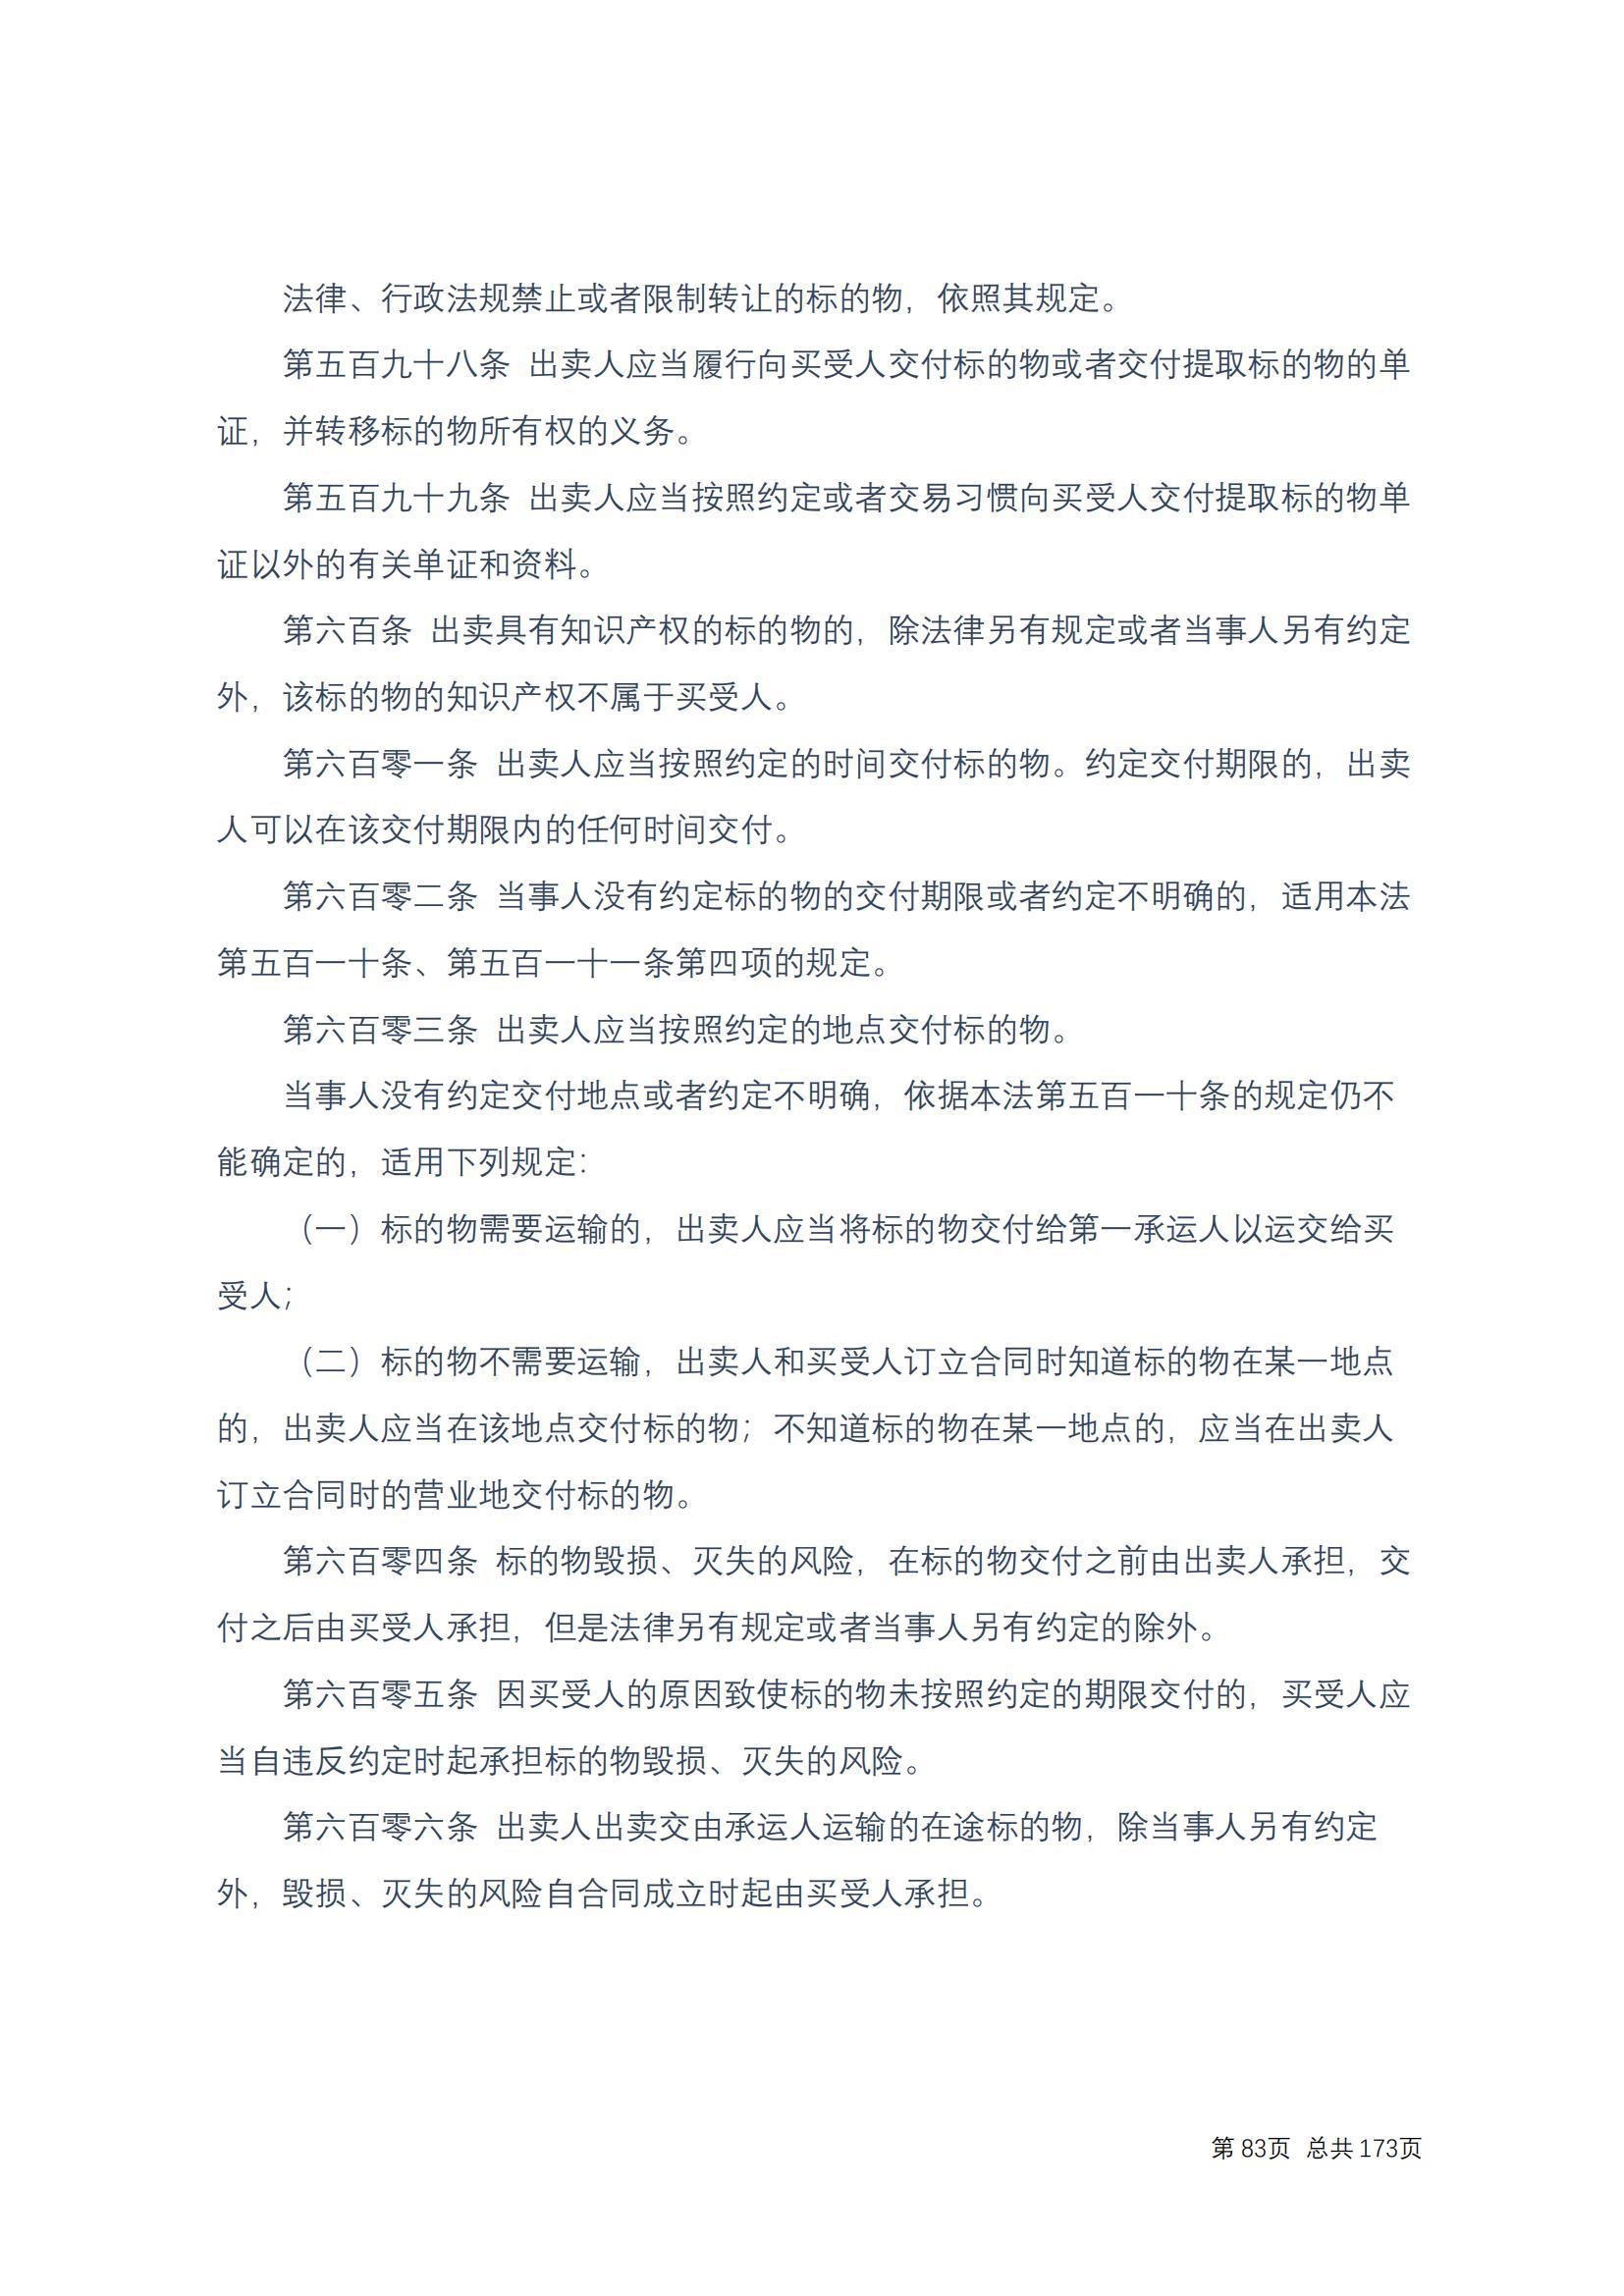 中华人民共和国民法典 修改过_82